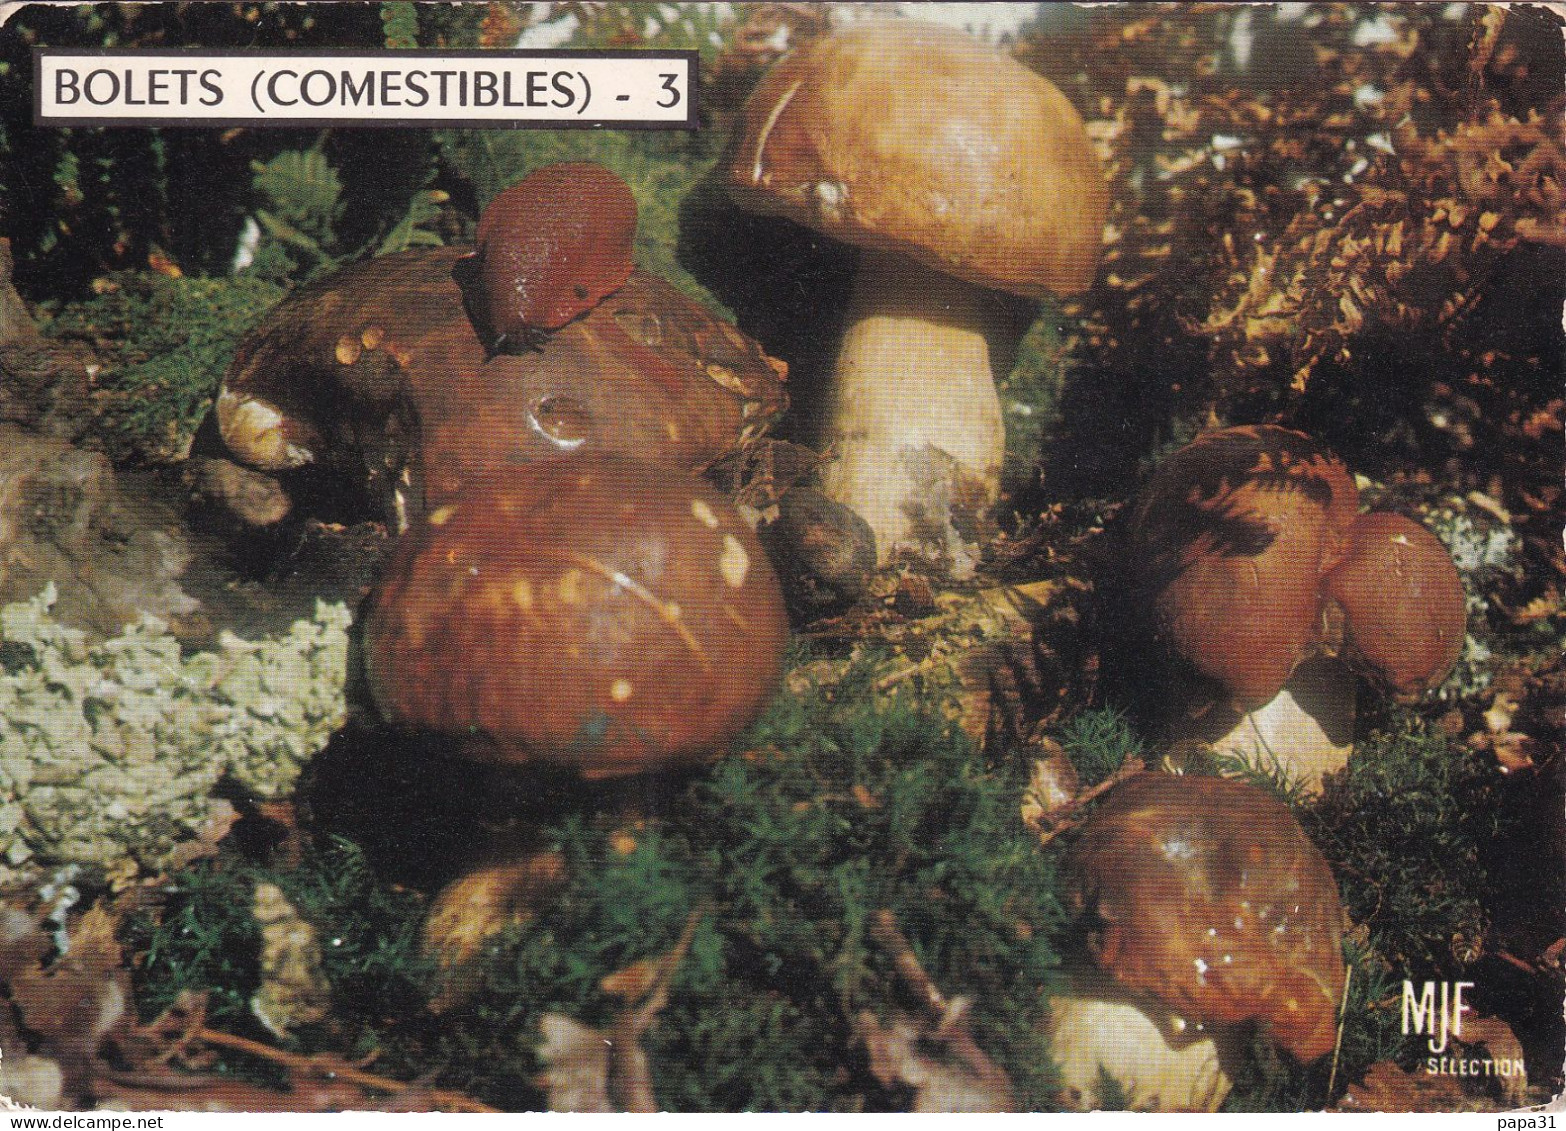 BOLETS (Comestibles) - Mushrooms